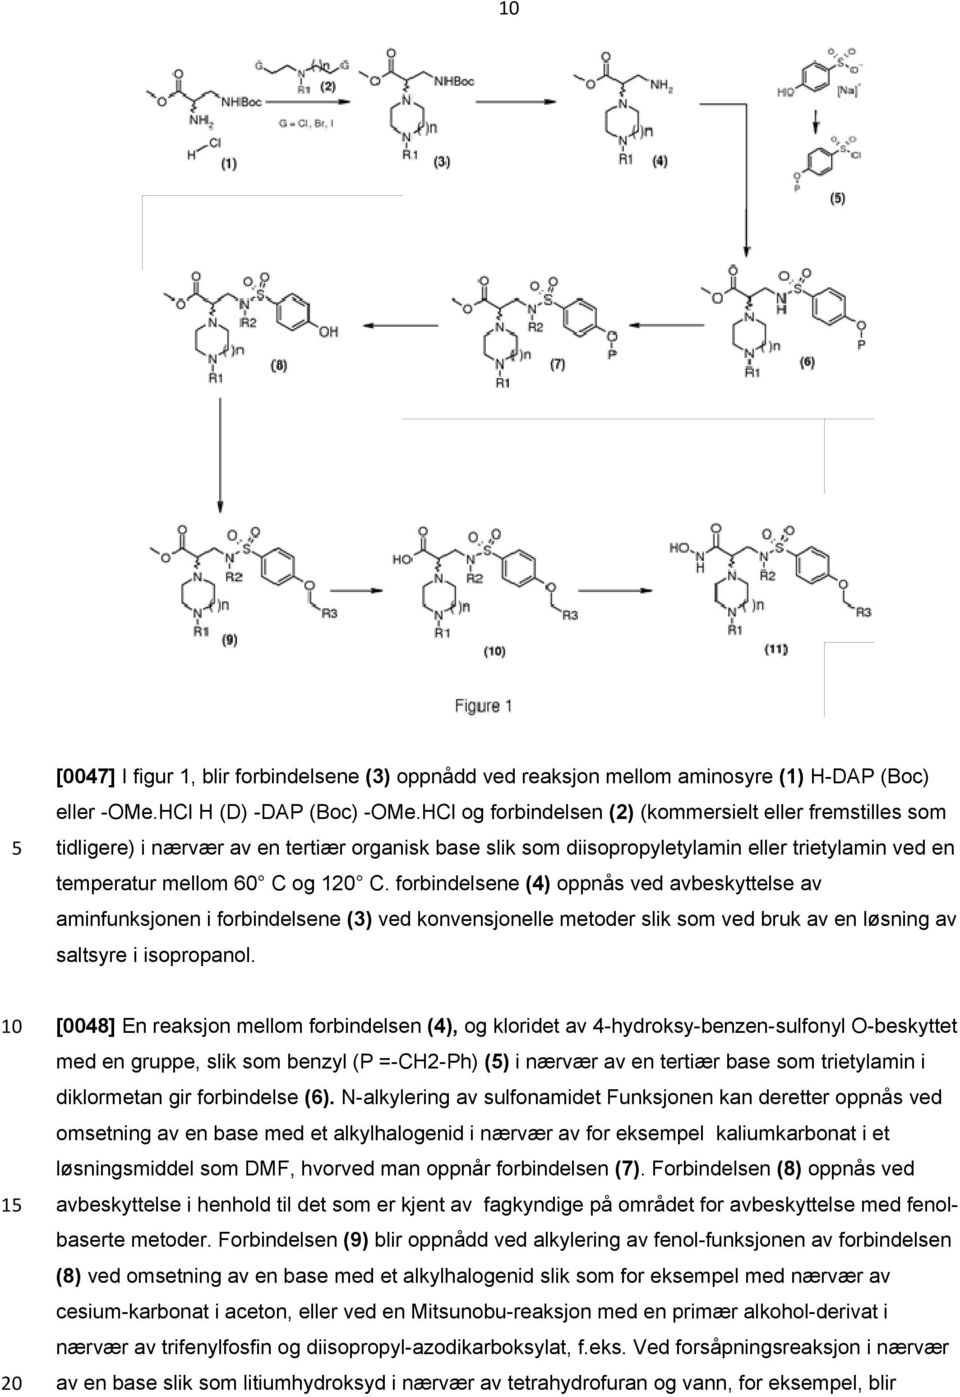 forbindelsene (4) oppnås ved avbeskyttelse av aminfunksjonen i forbindelsene (3) ved d konvensjonelle metoder slik som ved bruk av en løsning av saltsyre i isopropanol.